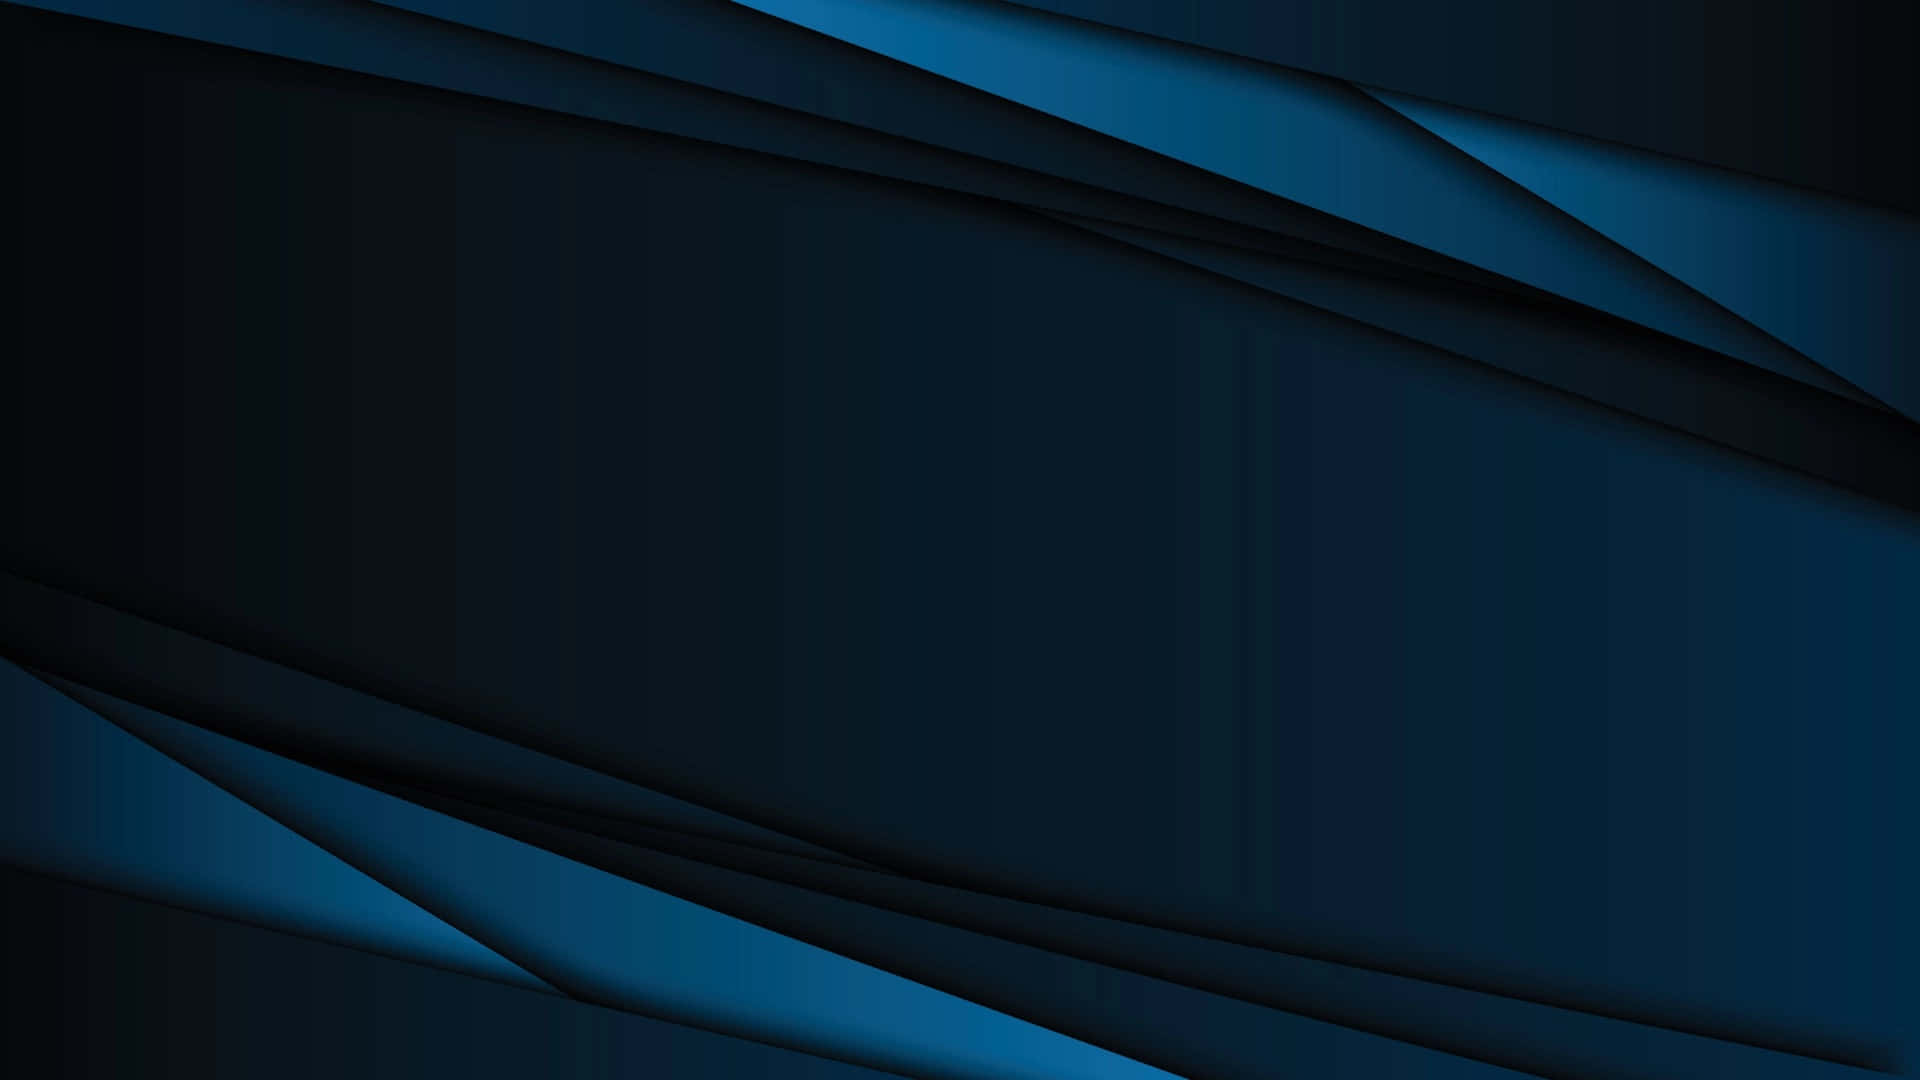 Fondoestético Oscuro En Color Azul Marino.